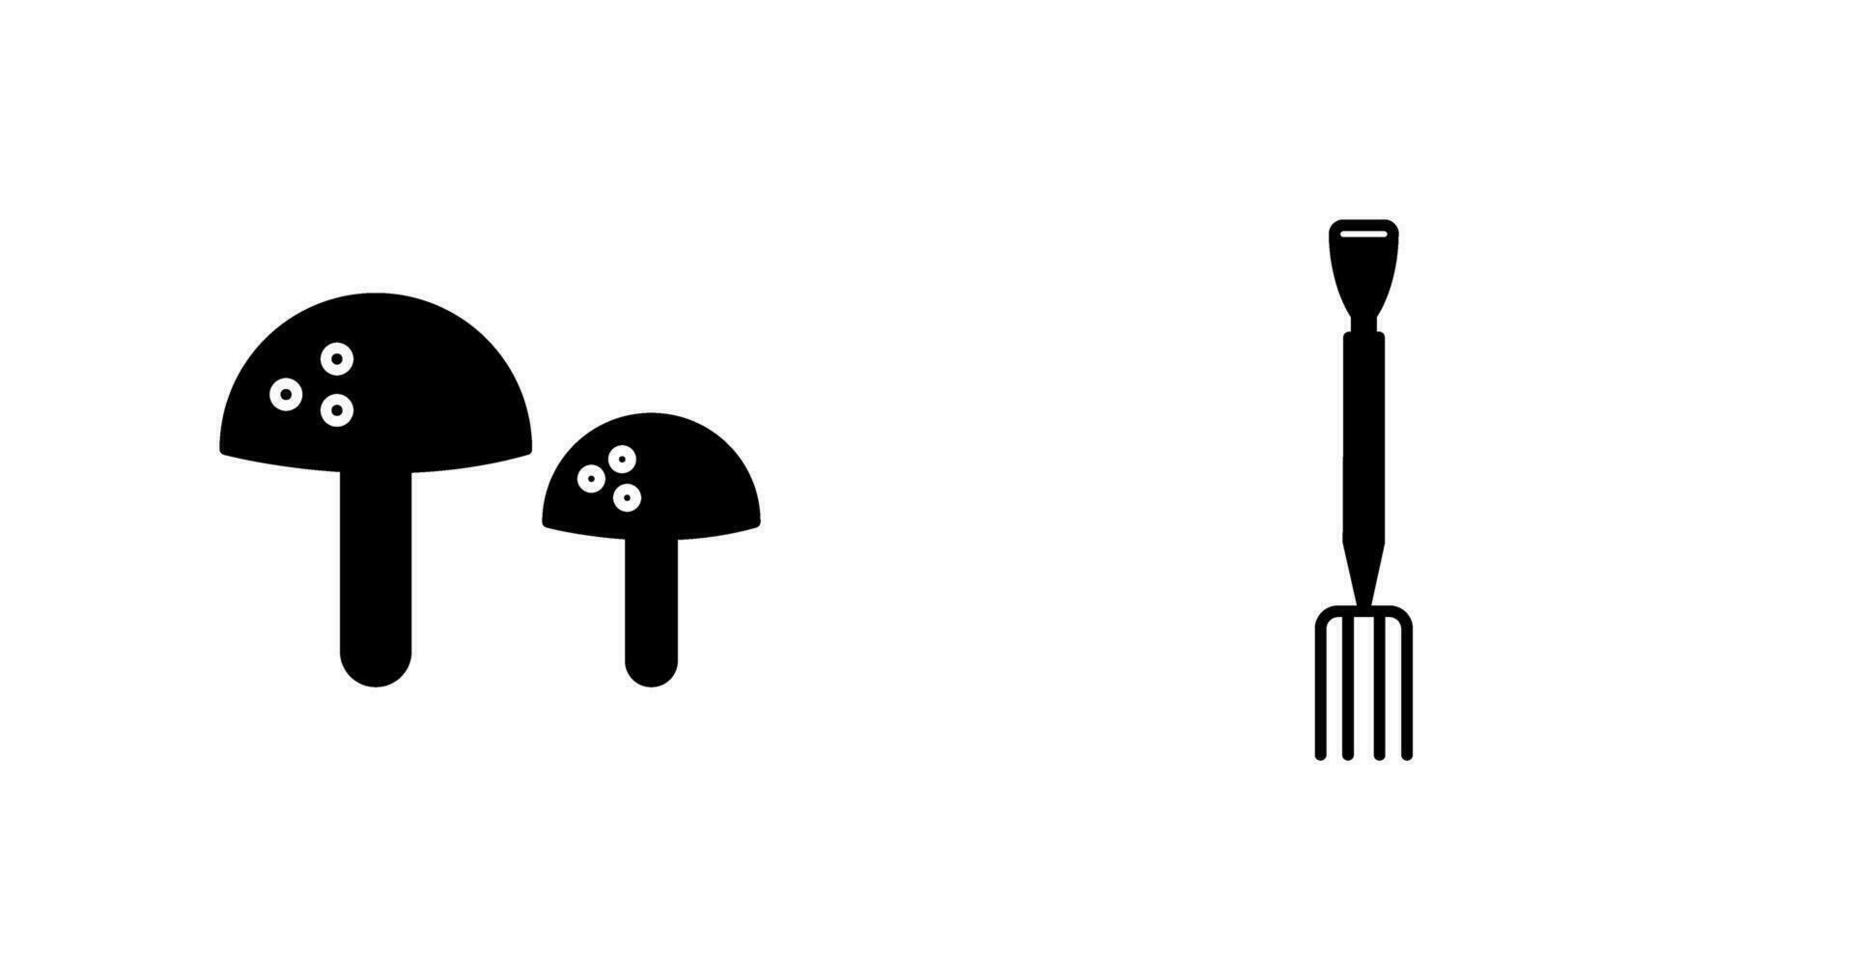 hongos y jardinería tenedor icono vector